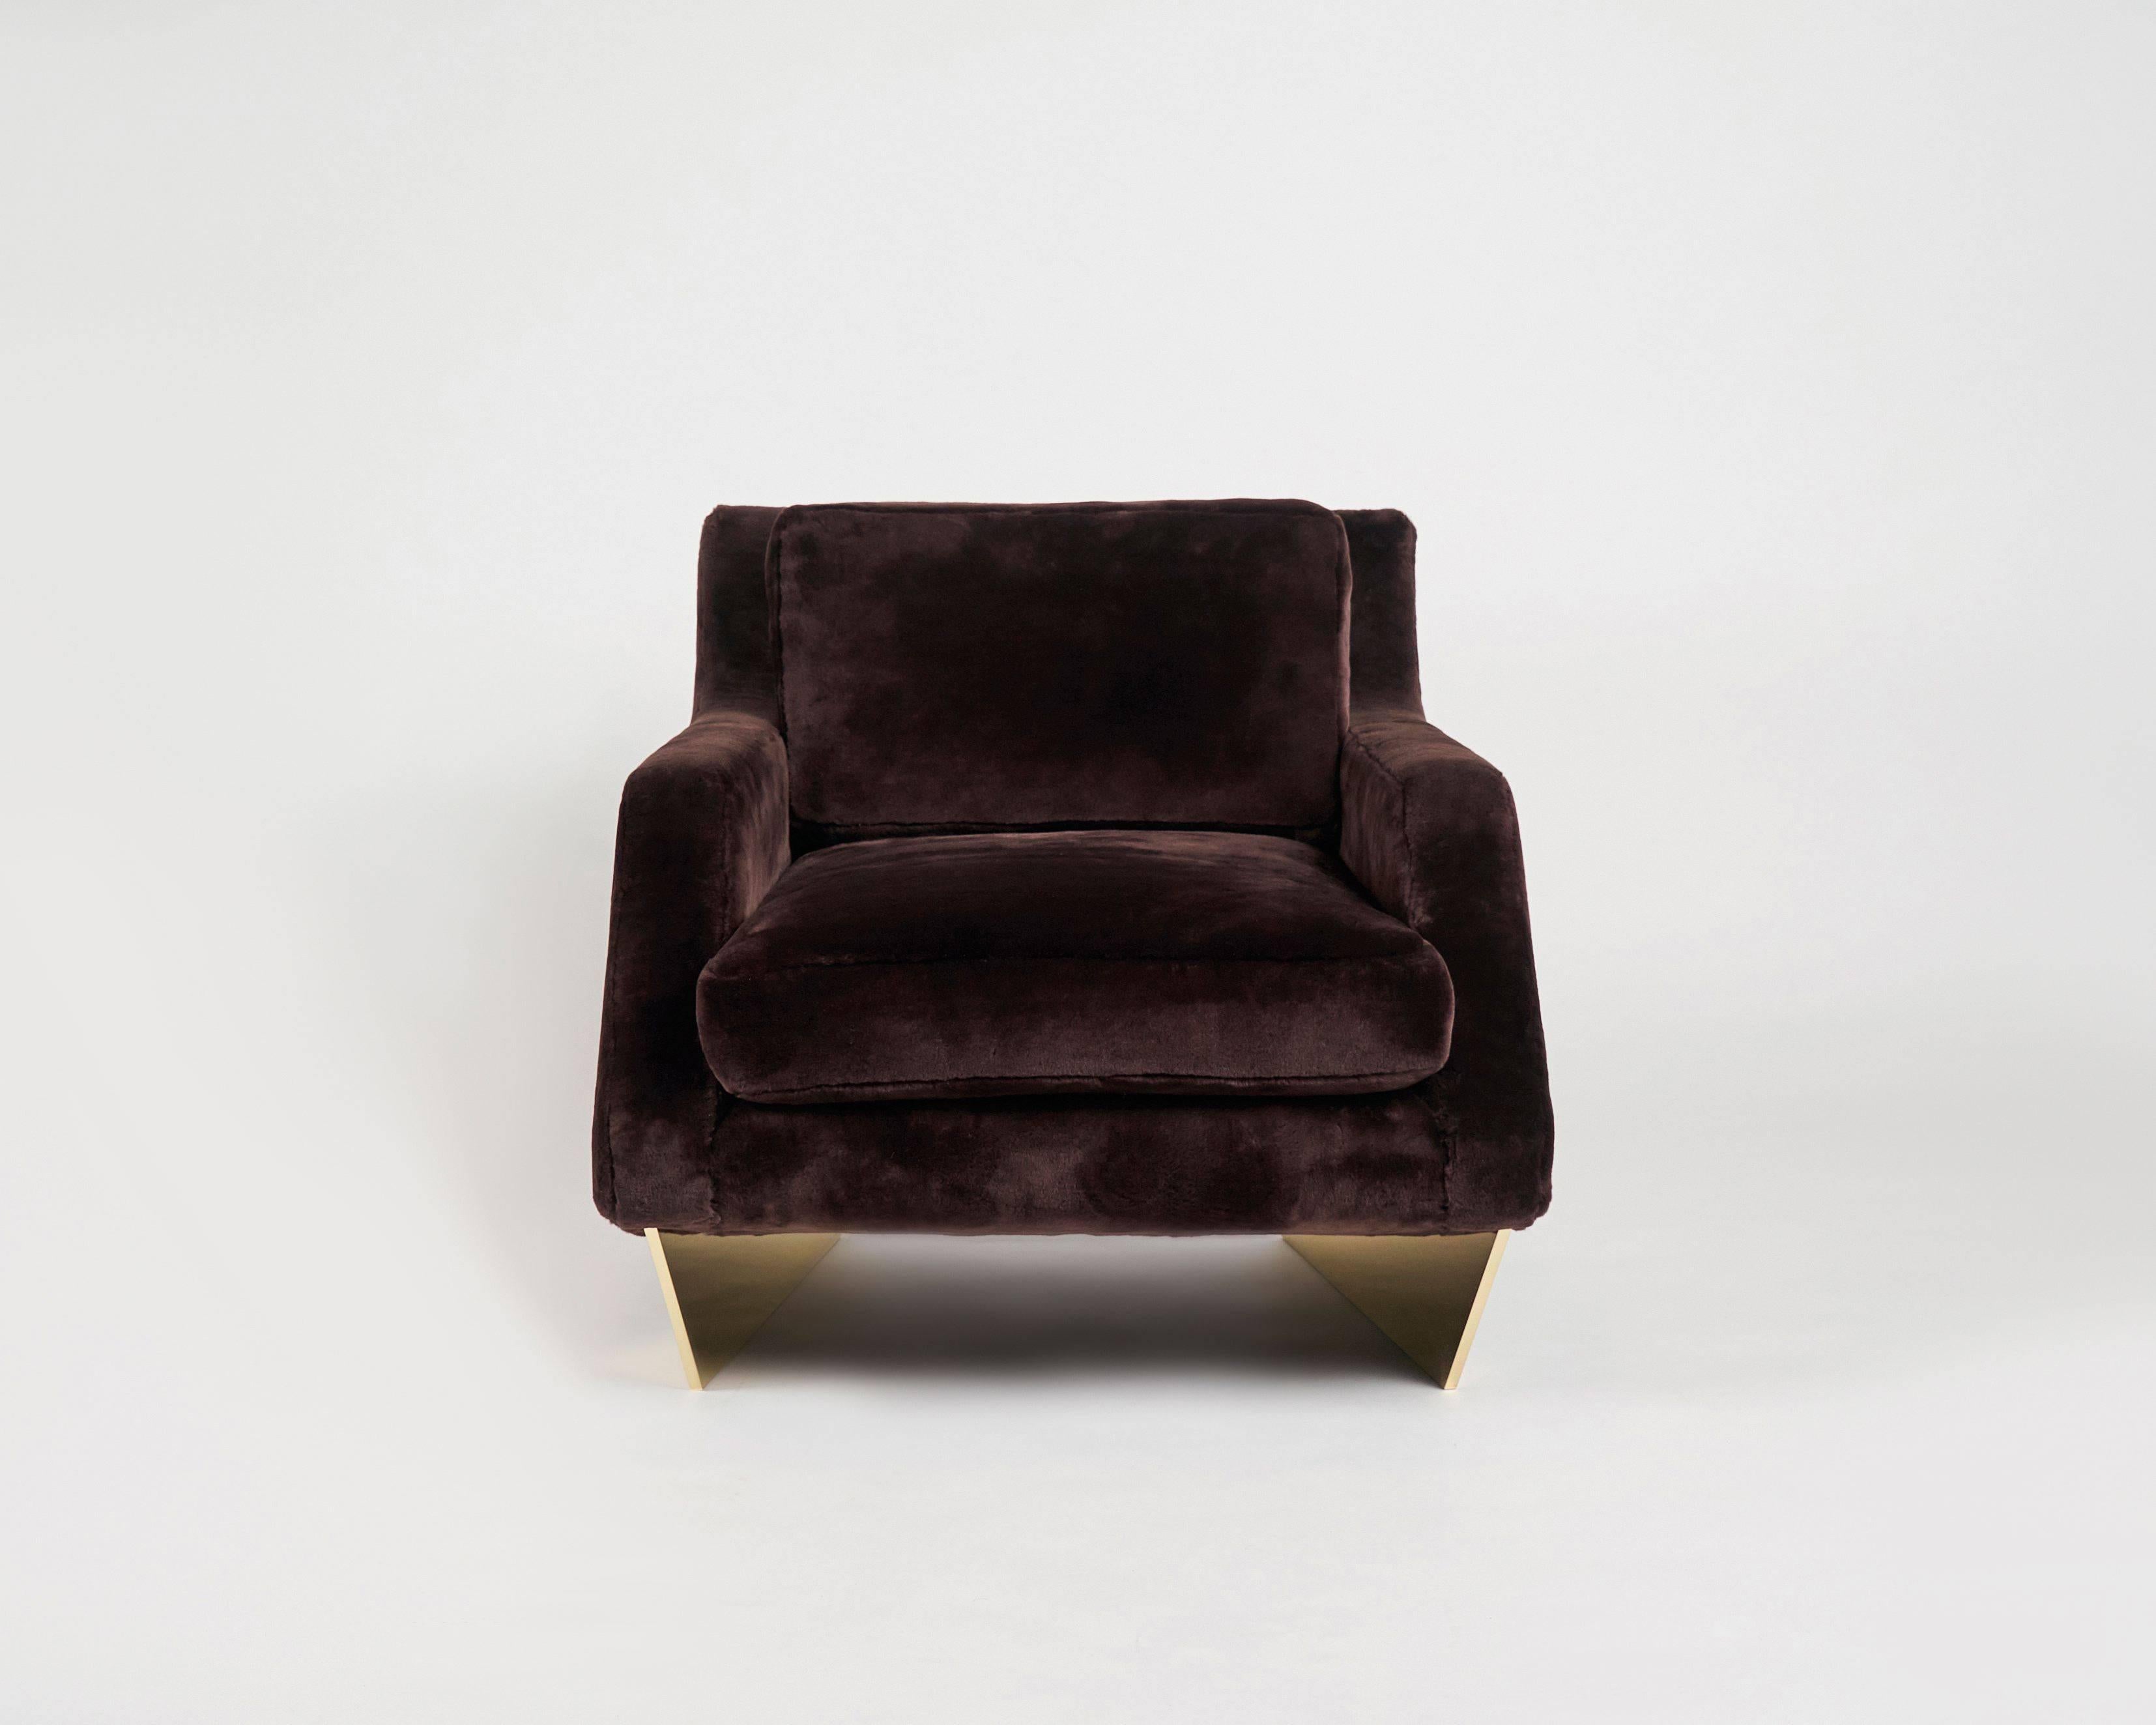 Dieser fabelhafte Sessel des Architekten William T. Georgis ist ein Pendant zu seinem bekannten Sofa. Er hat eine besonders breite Sitzfläche und ruht auf einem Paar weit auseinander stehender, polierter Bronzebeine.

Die Beine sind in den folgenden